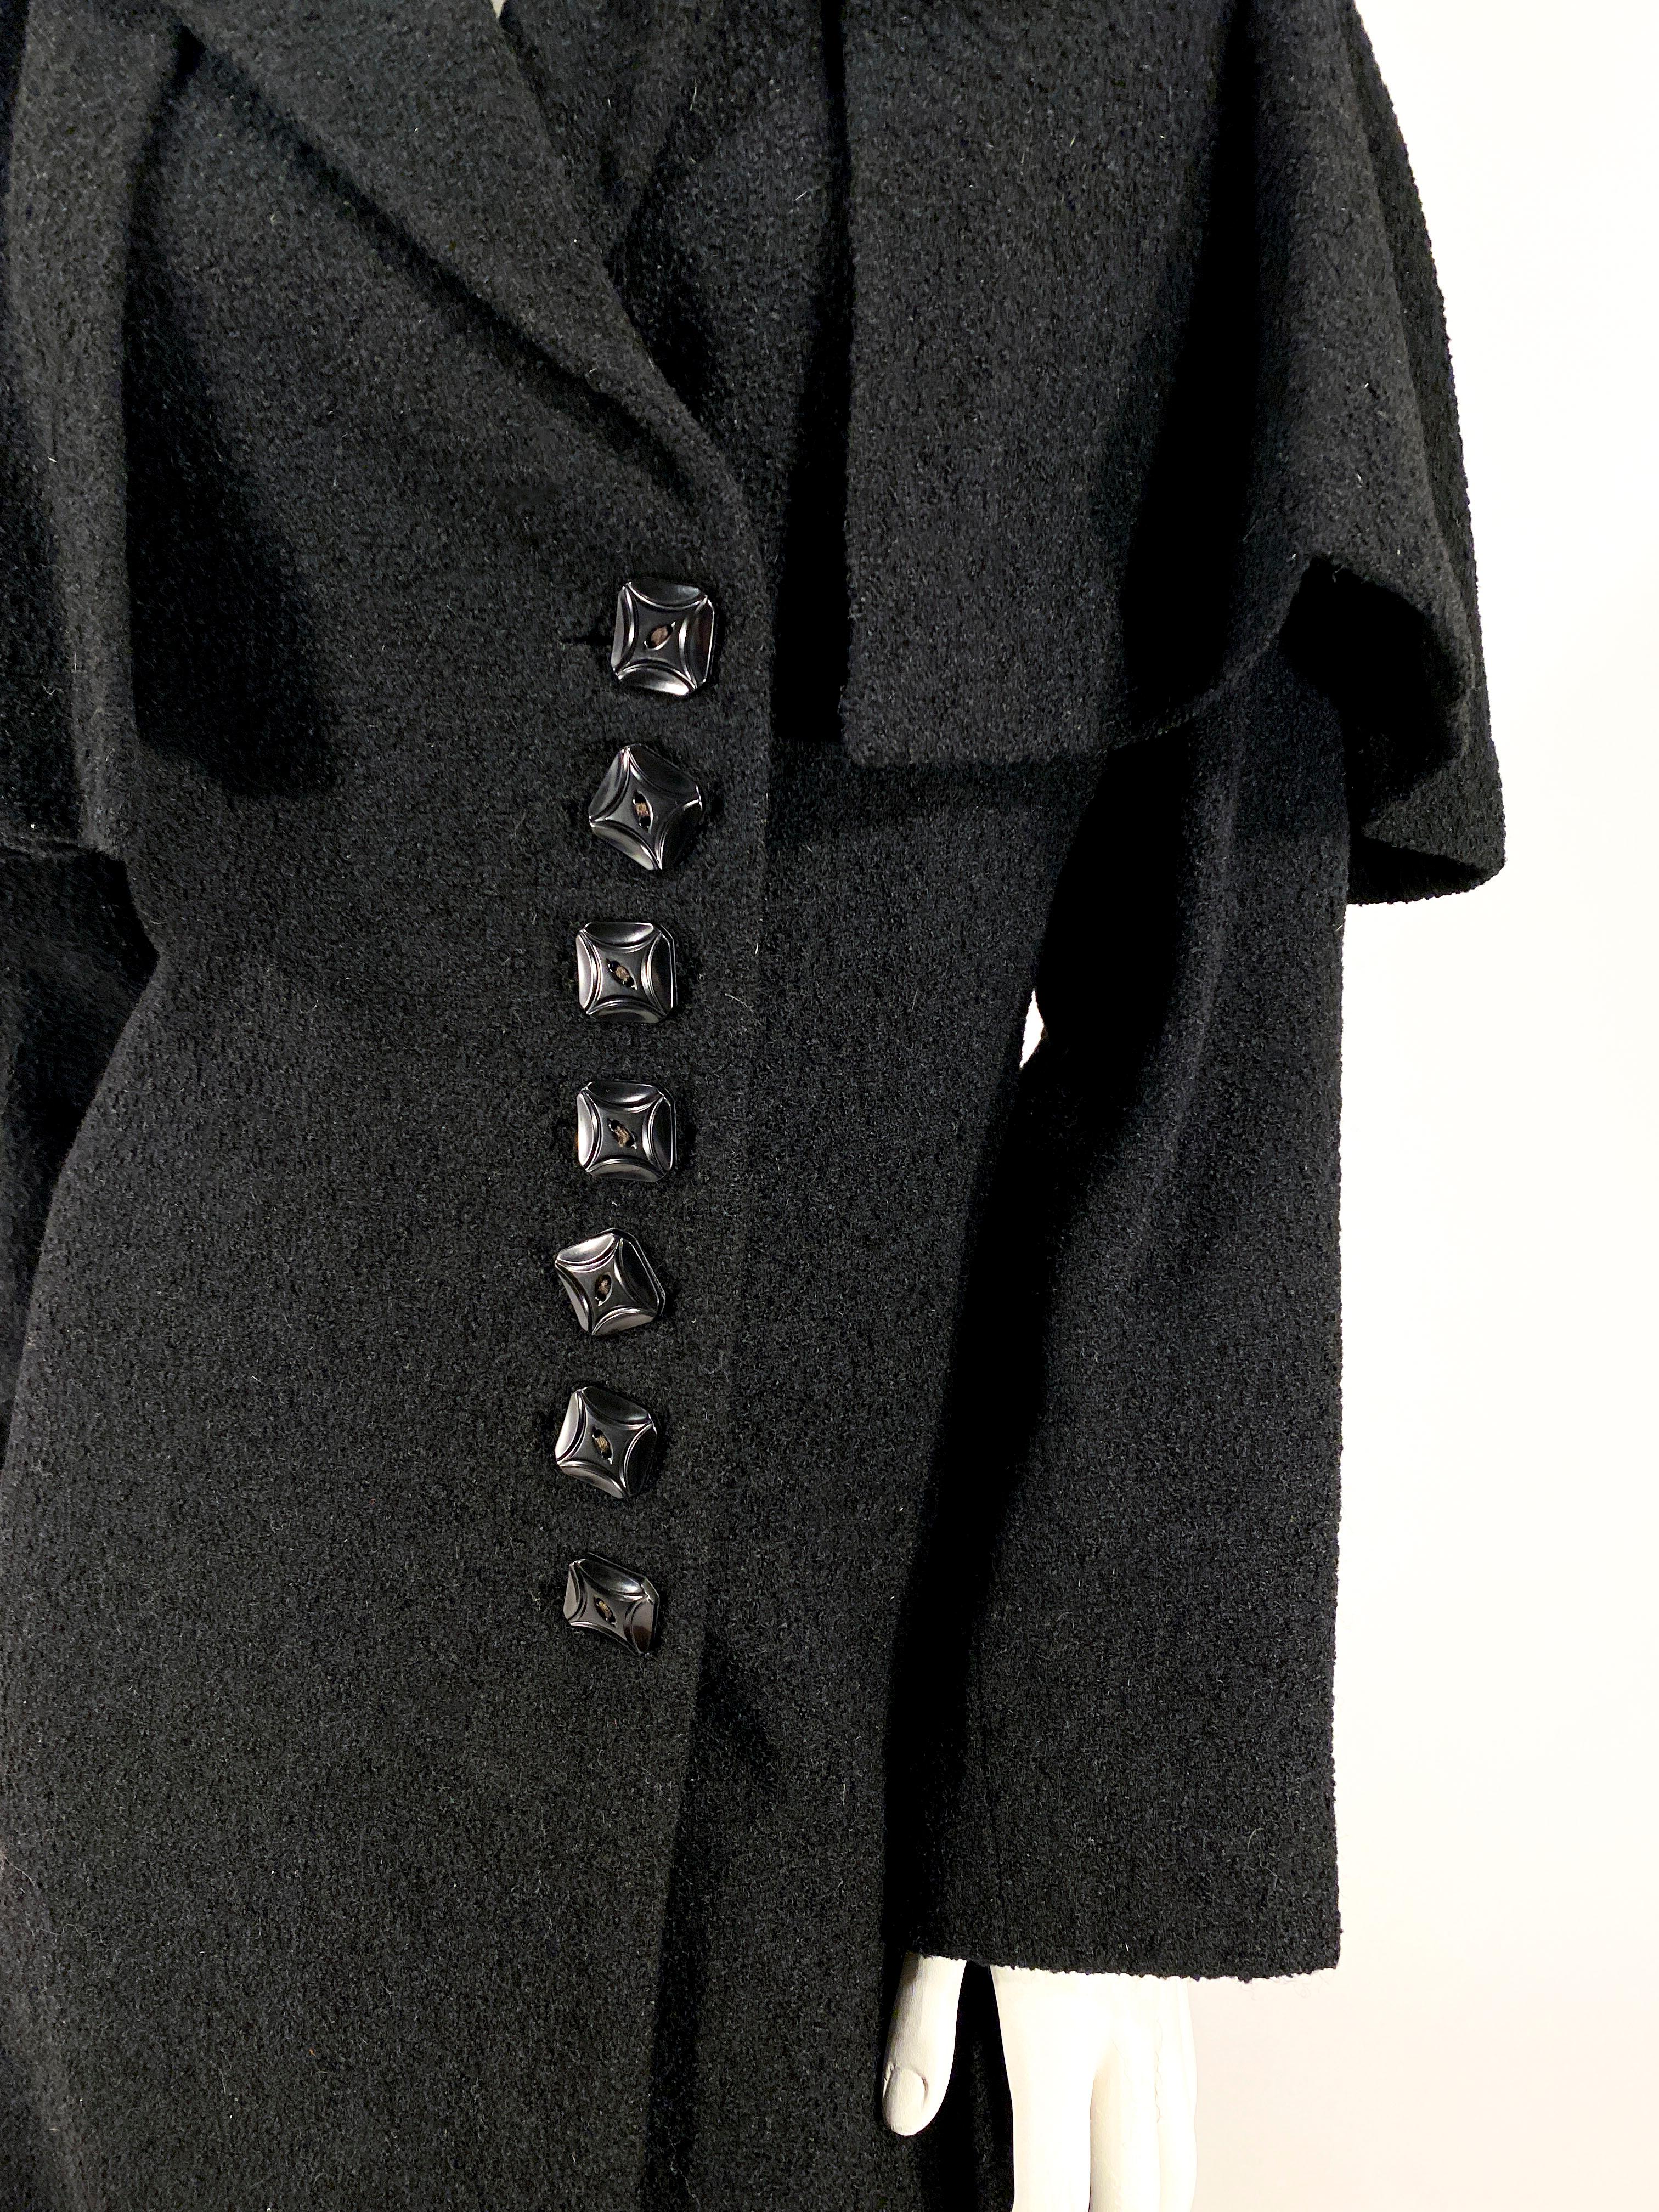 1930s trench coat